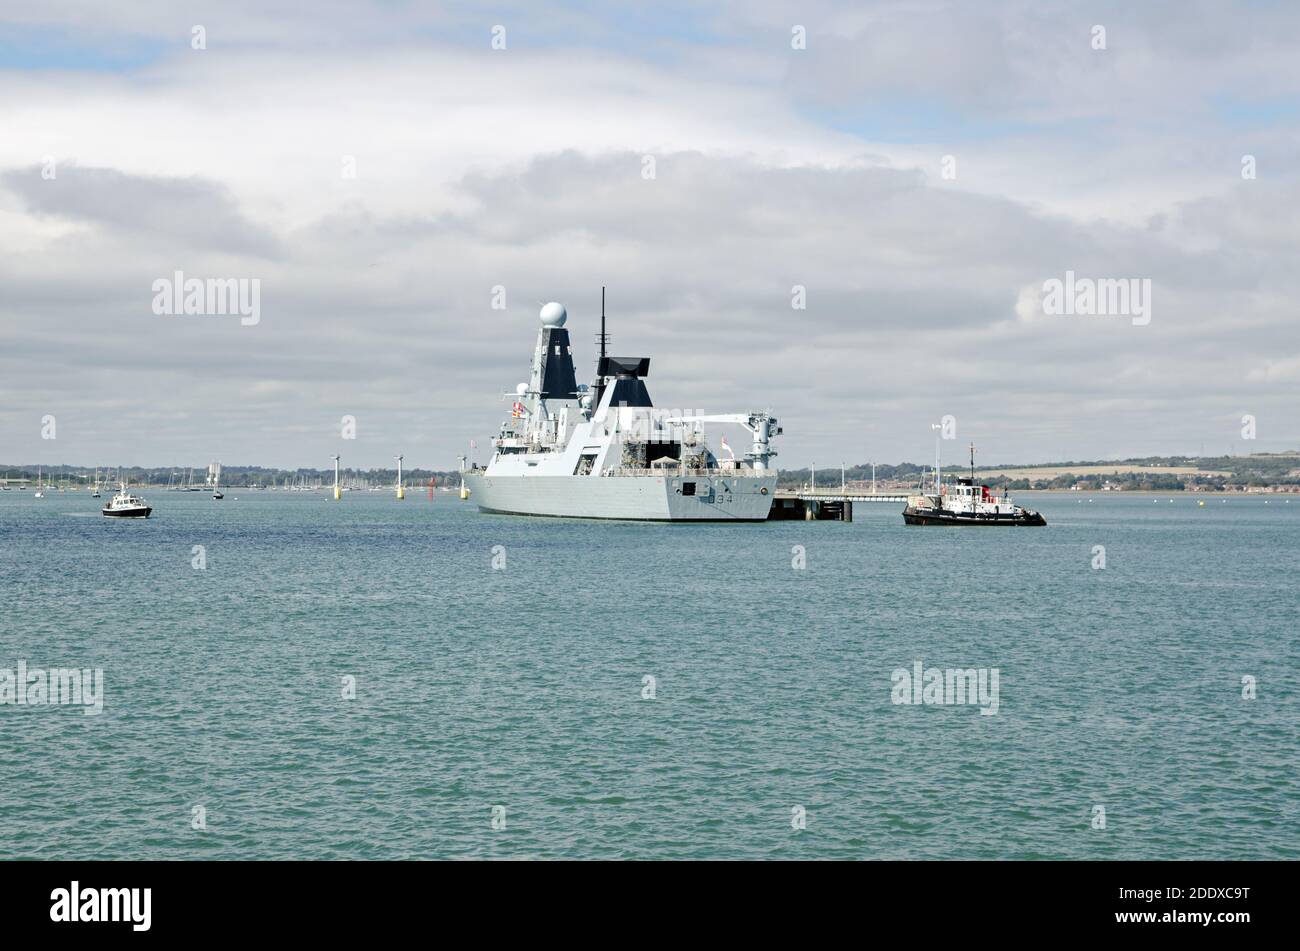 Portsmouth, Großbritannien - 8. September 2020: Der Zerstörer der Royal Navy HMS Diamond vertäute an der Upper Harbour Ammunitioning Facility in Portsmouth Harbour, Ha Stockfoto